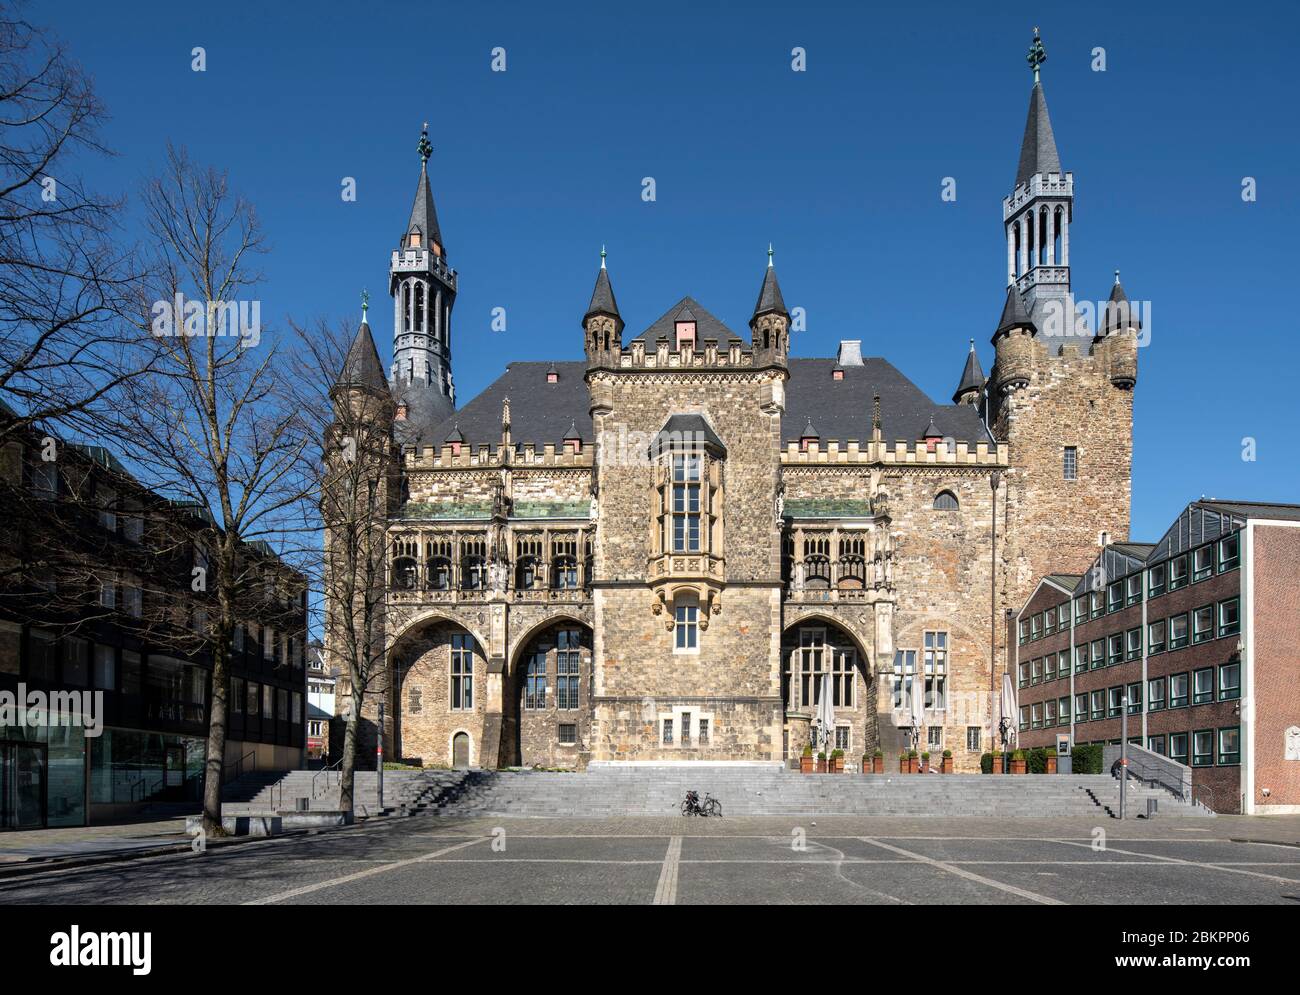 Aachen, Katschhof mit Rathaus von Süden Banque D'Images